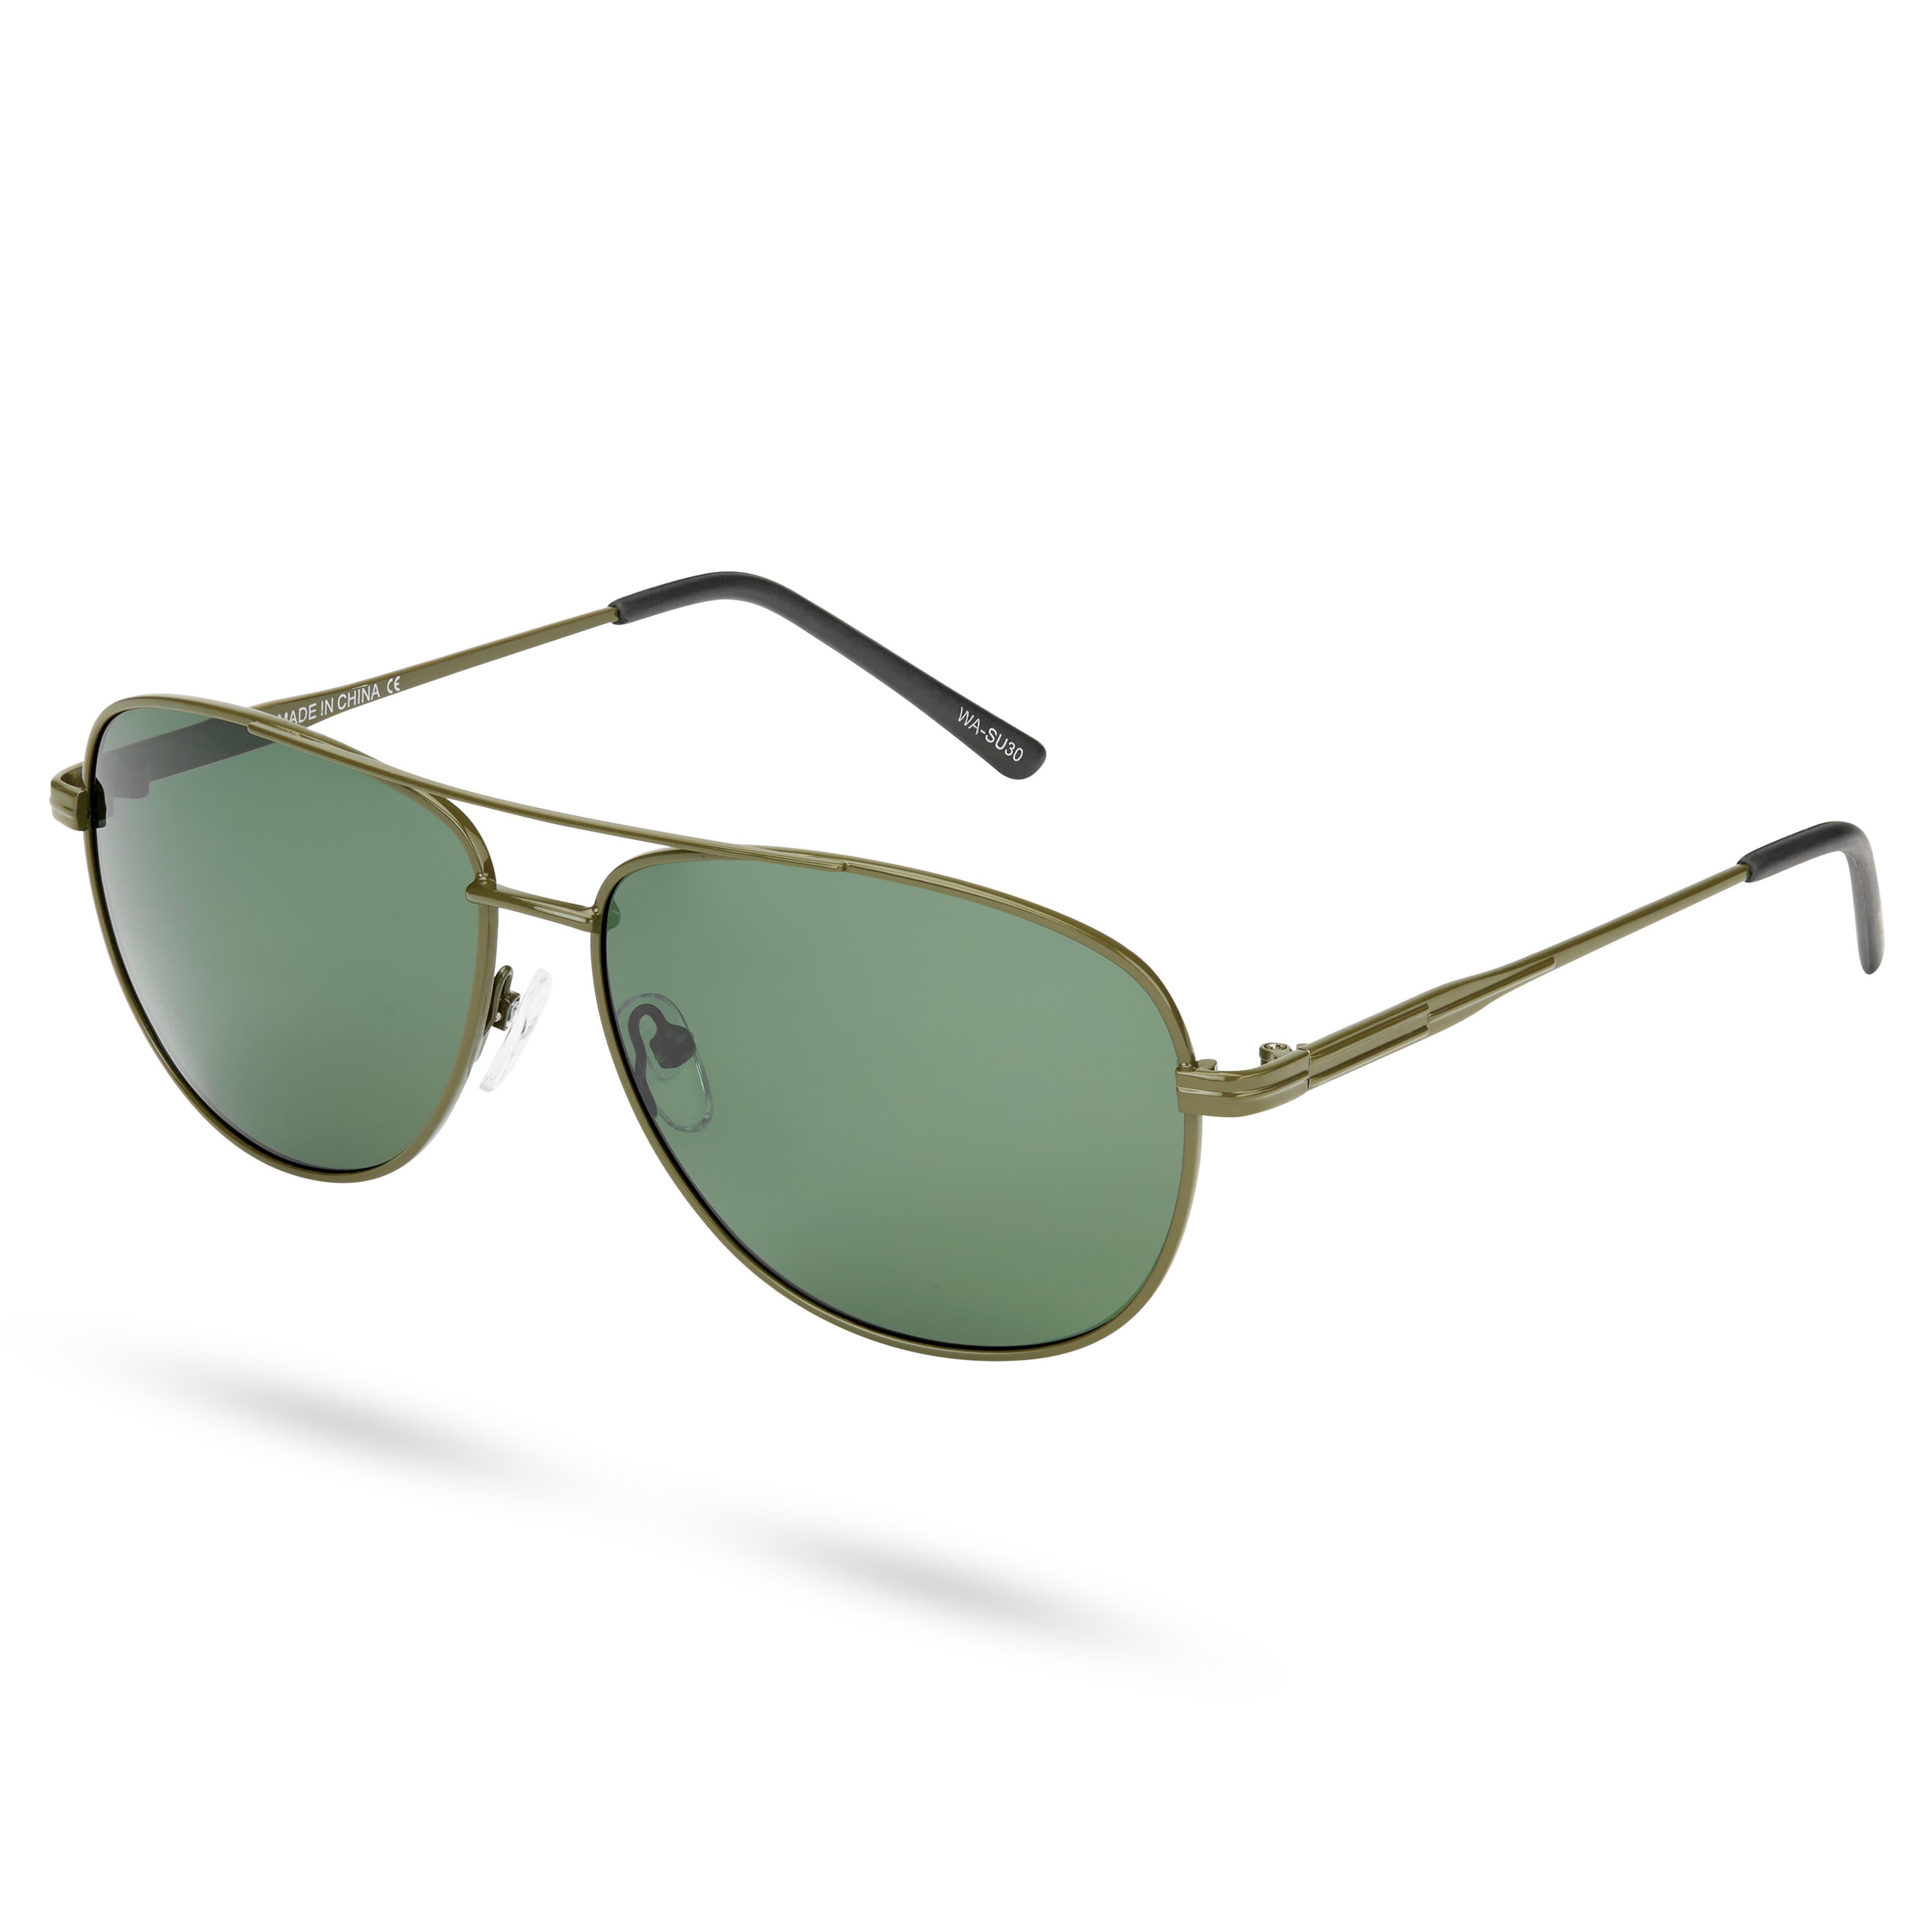 Zielono-oliwkowe okulary przeciwsłoneczne Aviator Ambit